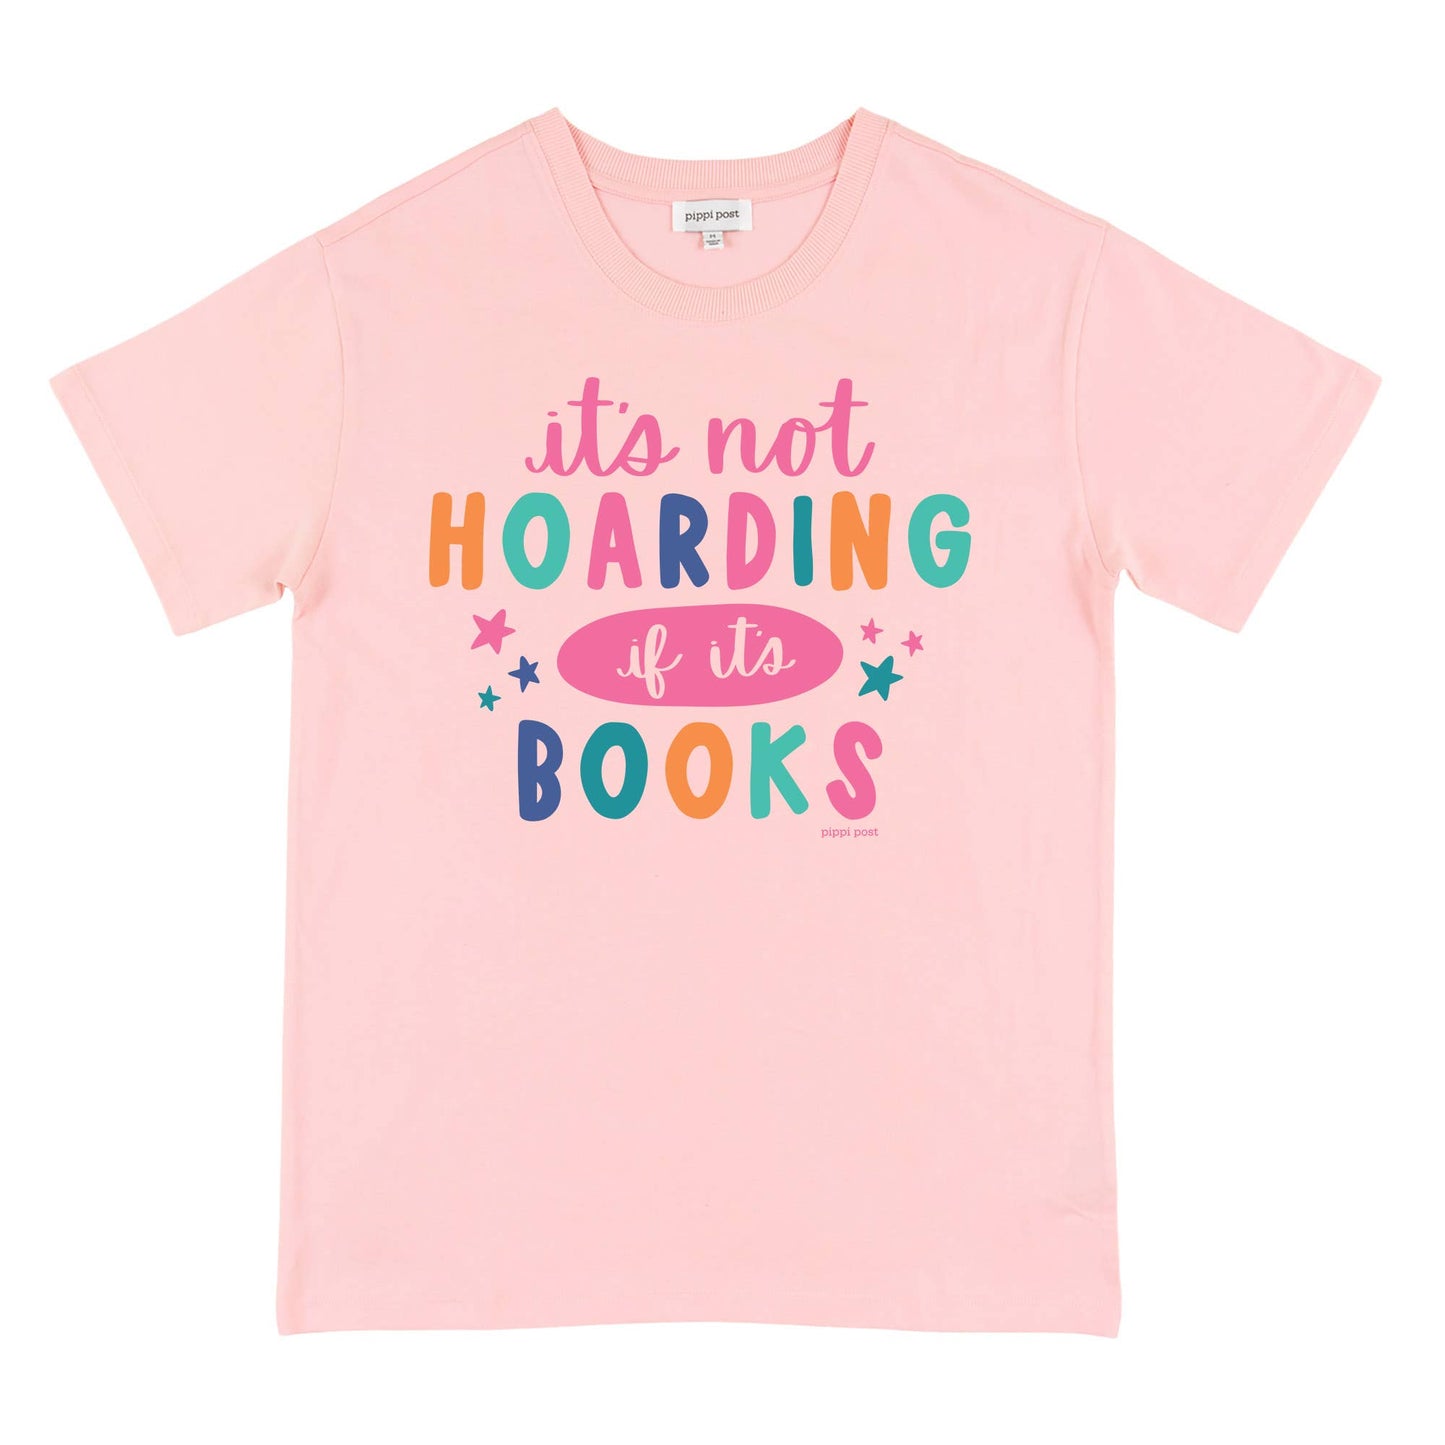 It’s Not Hoarding if it’s Books Tee